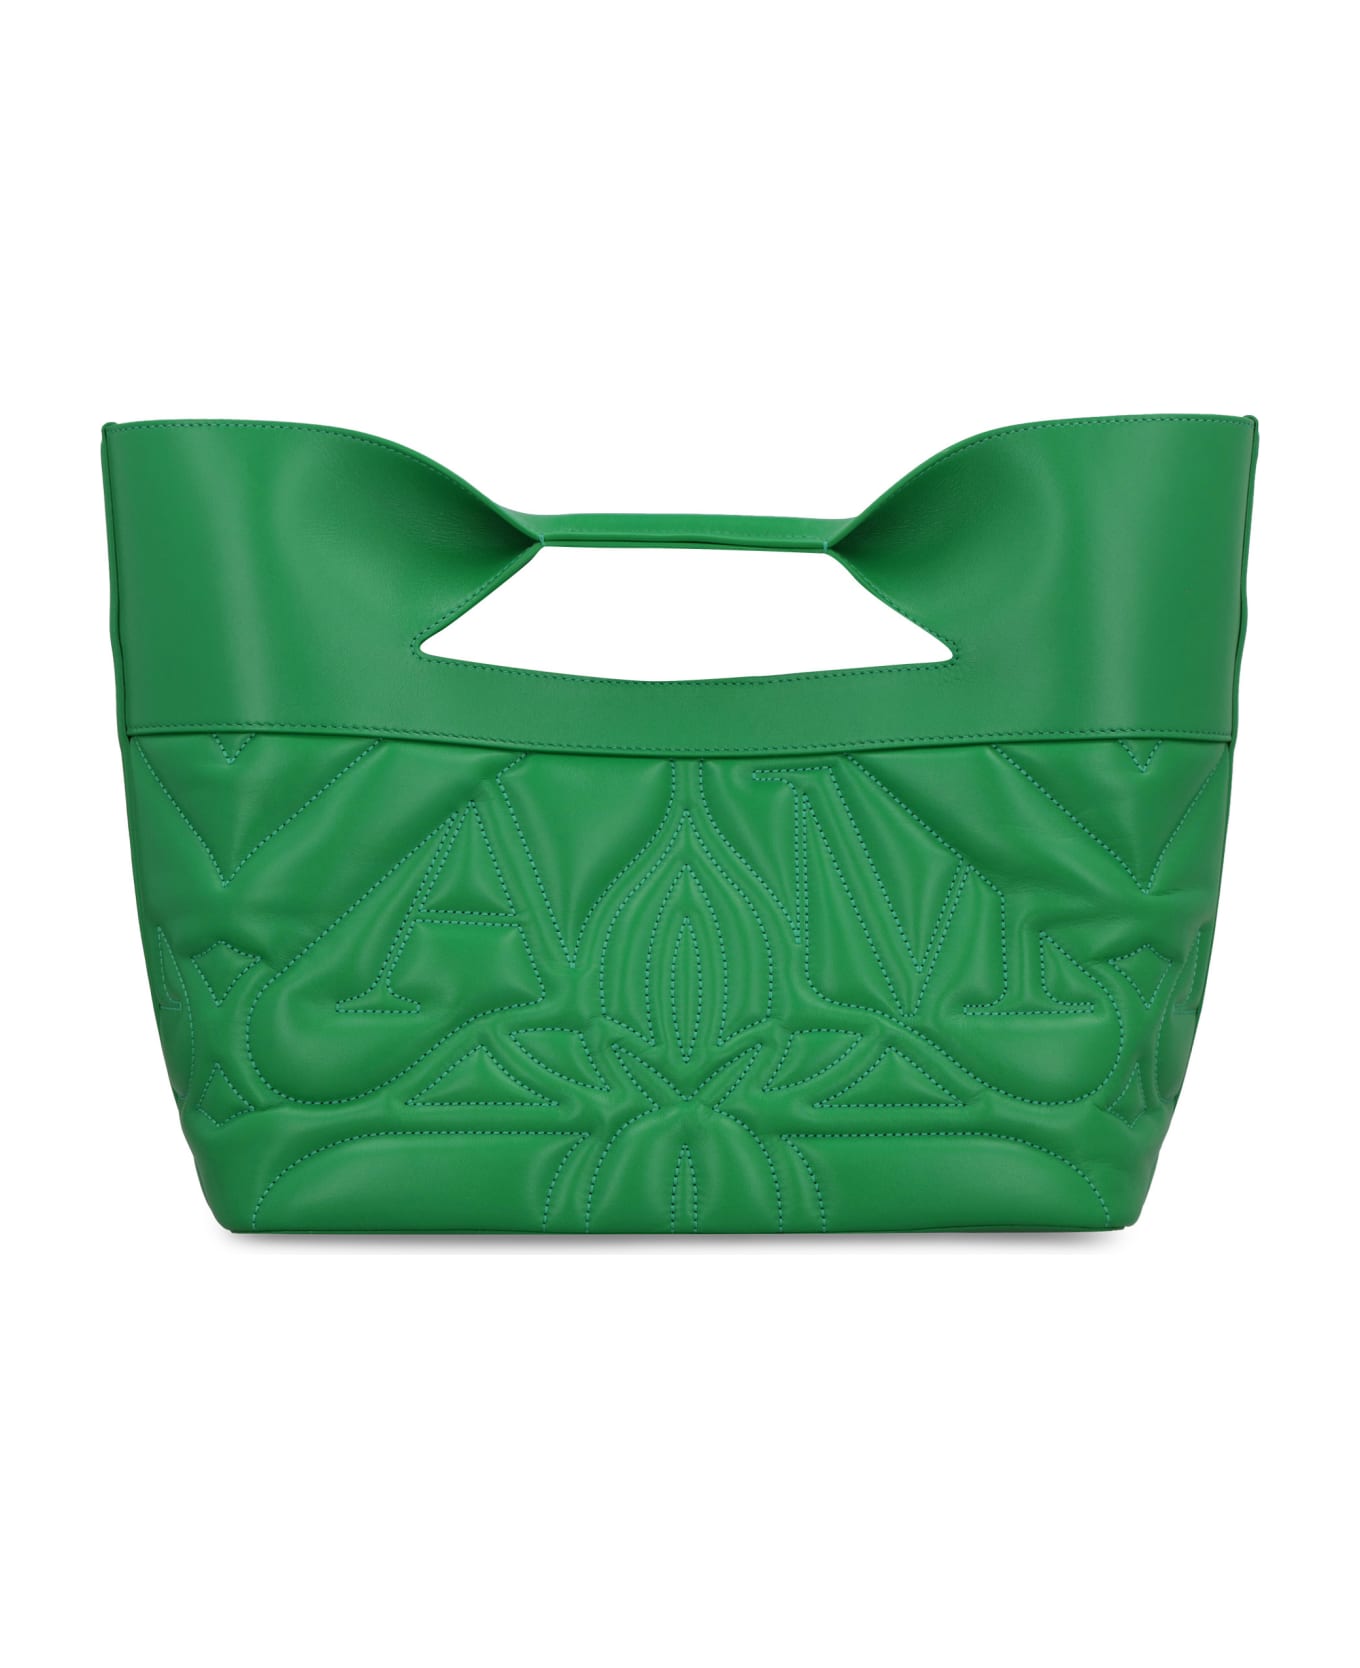 Alexander McQueen The Bow Handbag - green トートバッグ